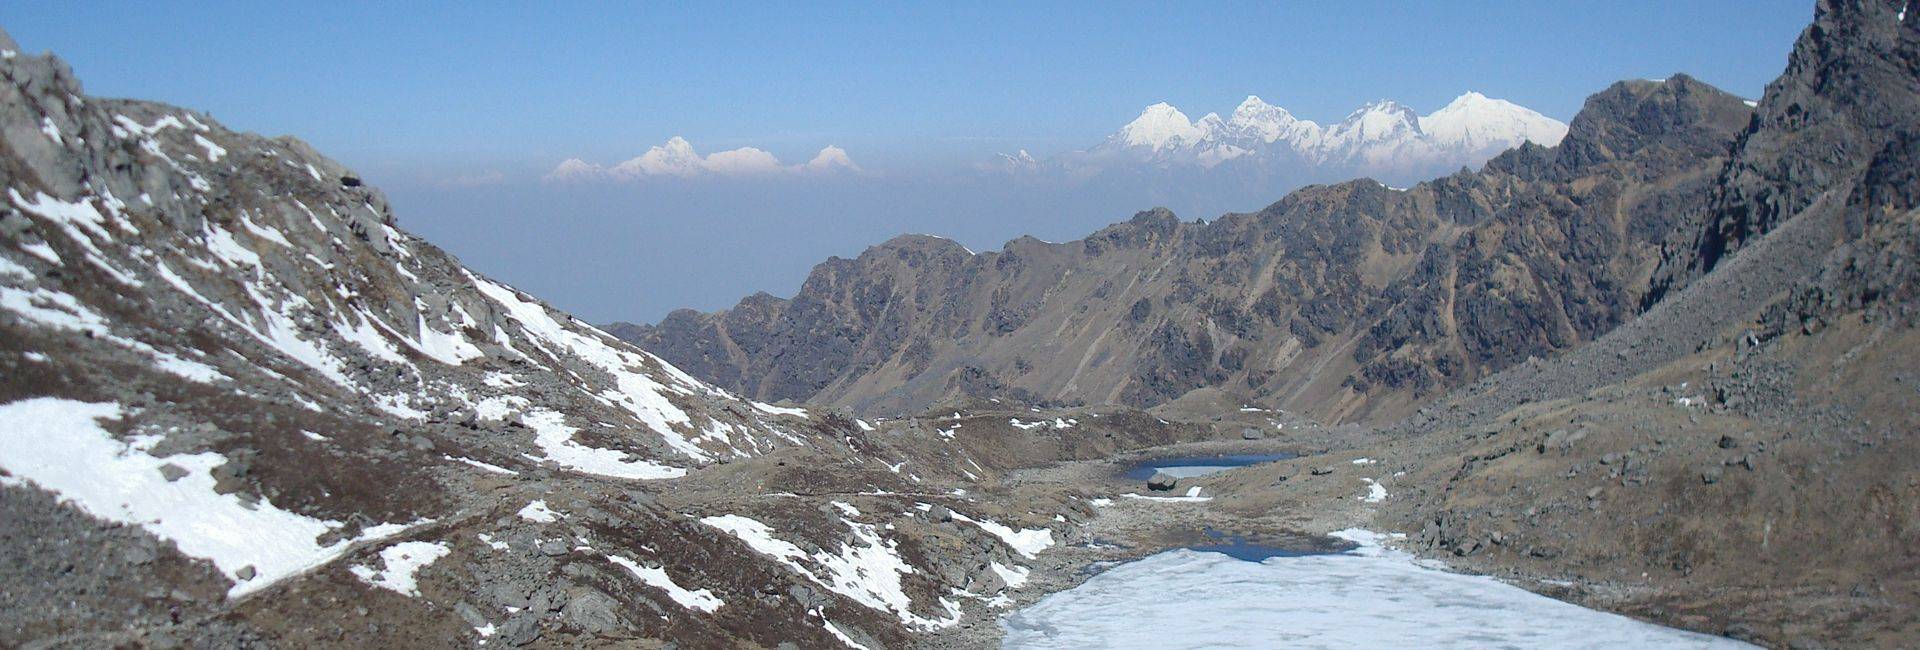 Langtang and Laurebina La trek in Nepal